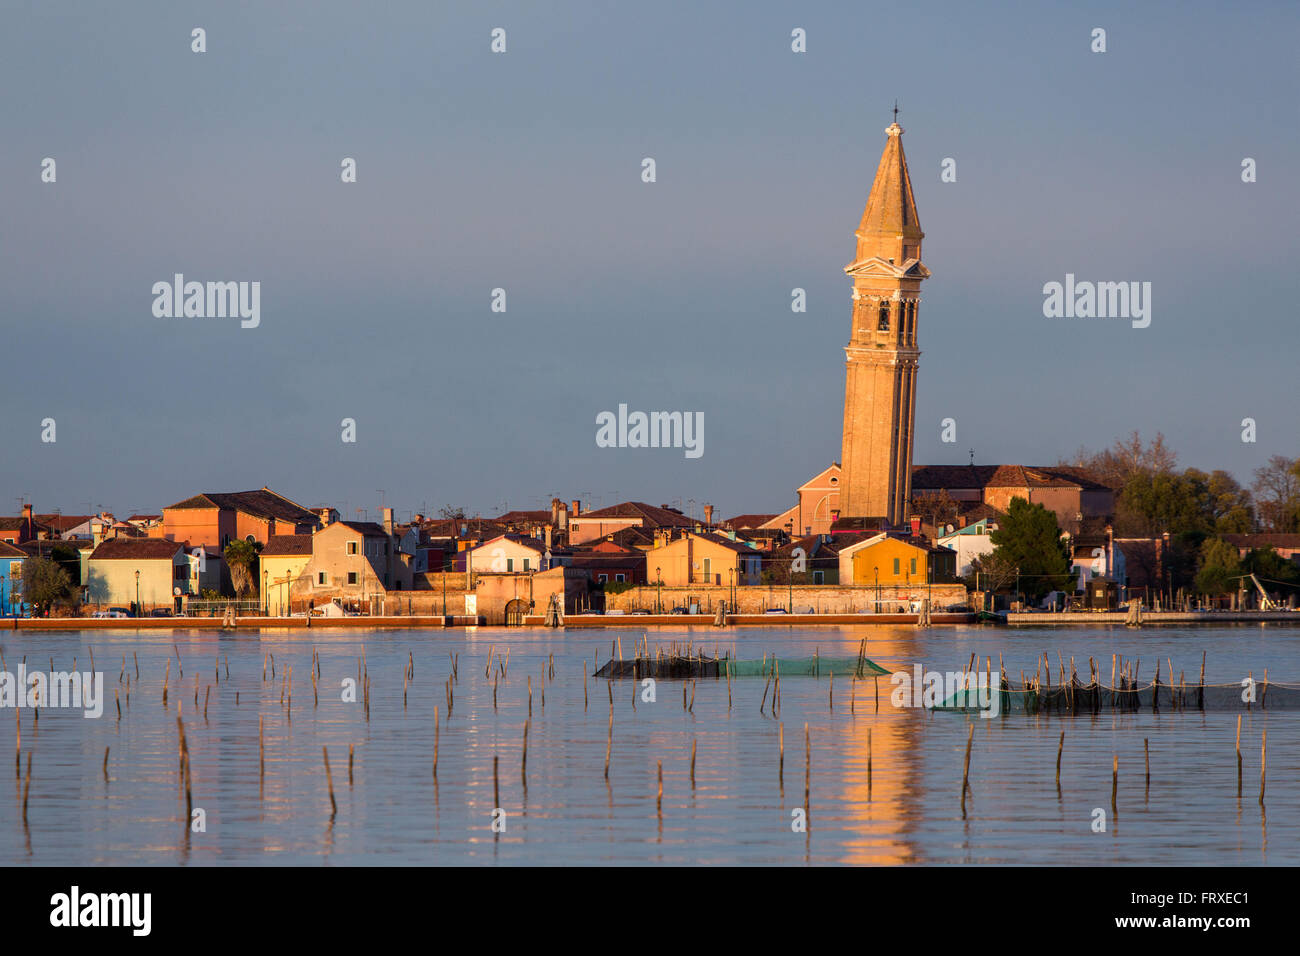 Lagune de Venise avec l'île de Burano et de la tour de Pise, village de pêcheurs avec façades colorées, Veneto, Italie Banque D'Images